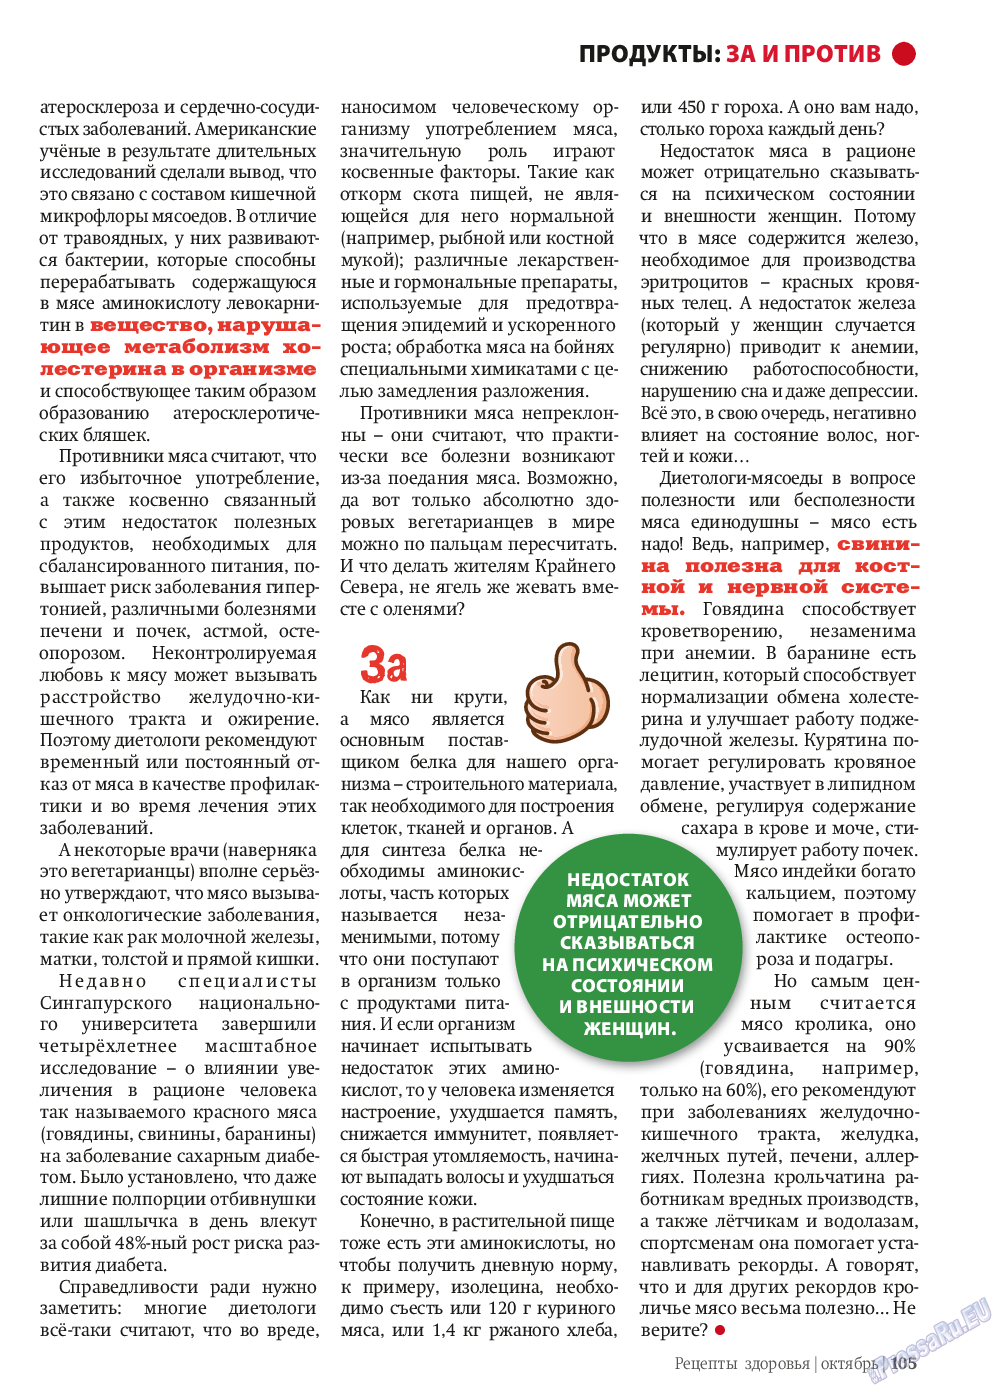 Рецепты здоровья, журнал. 2013 №10 стр.105